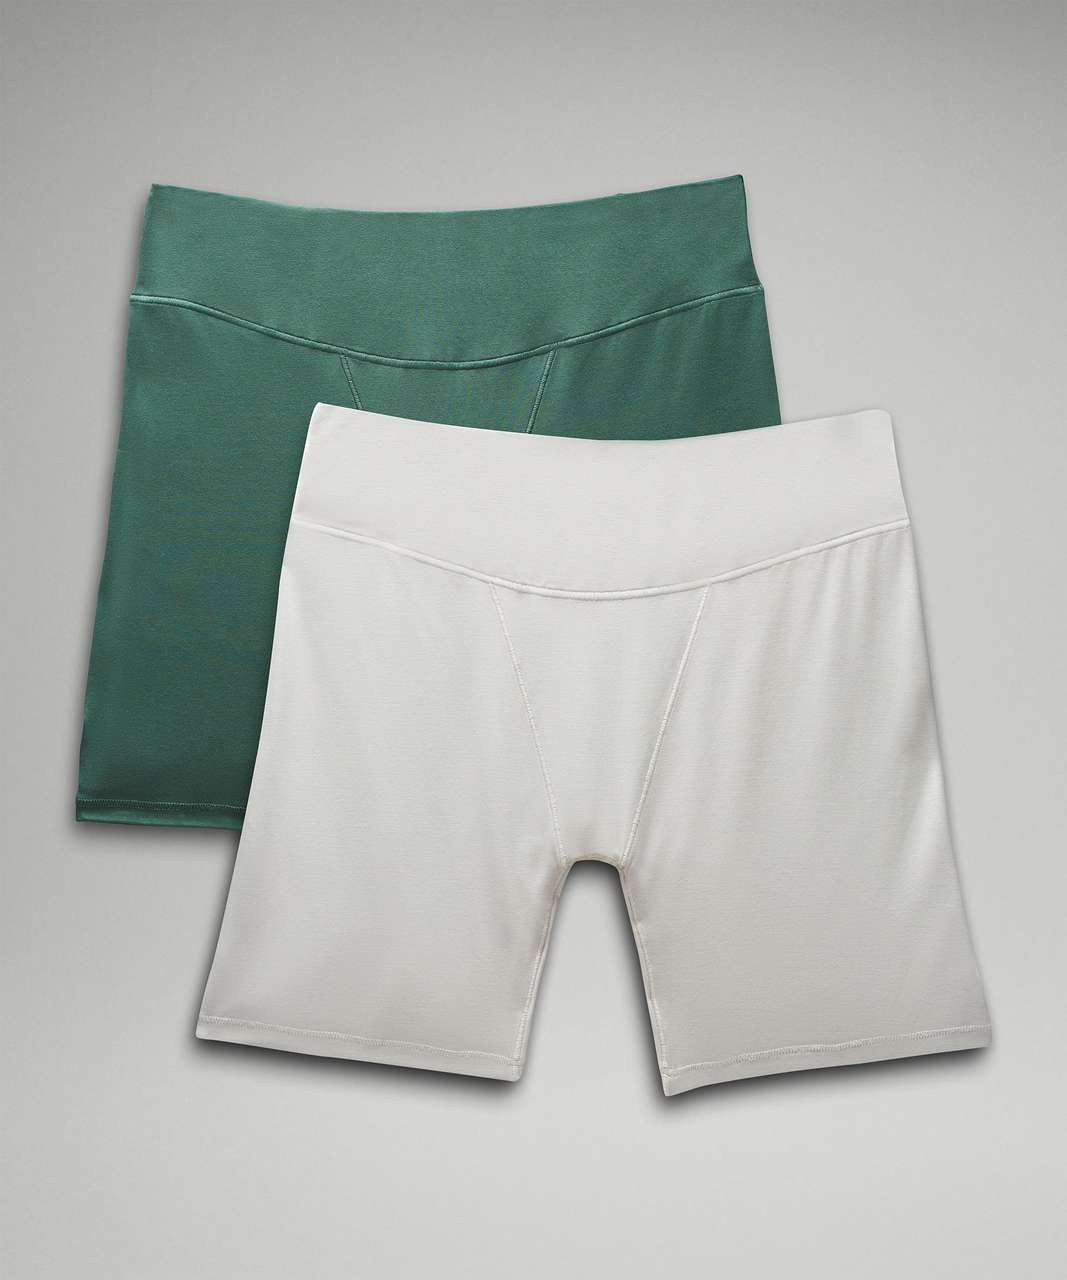 Lululemon UnderEase Super-High-Rise Shortie Underwear *2 Pack - Medium Forest / Vapor